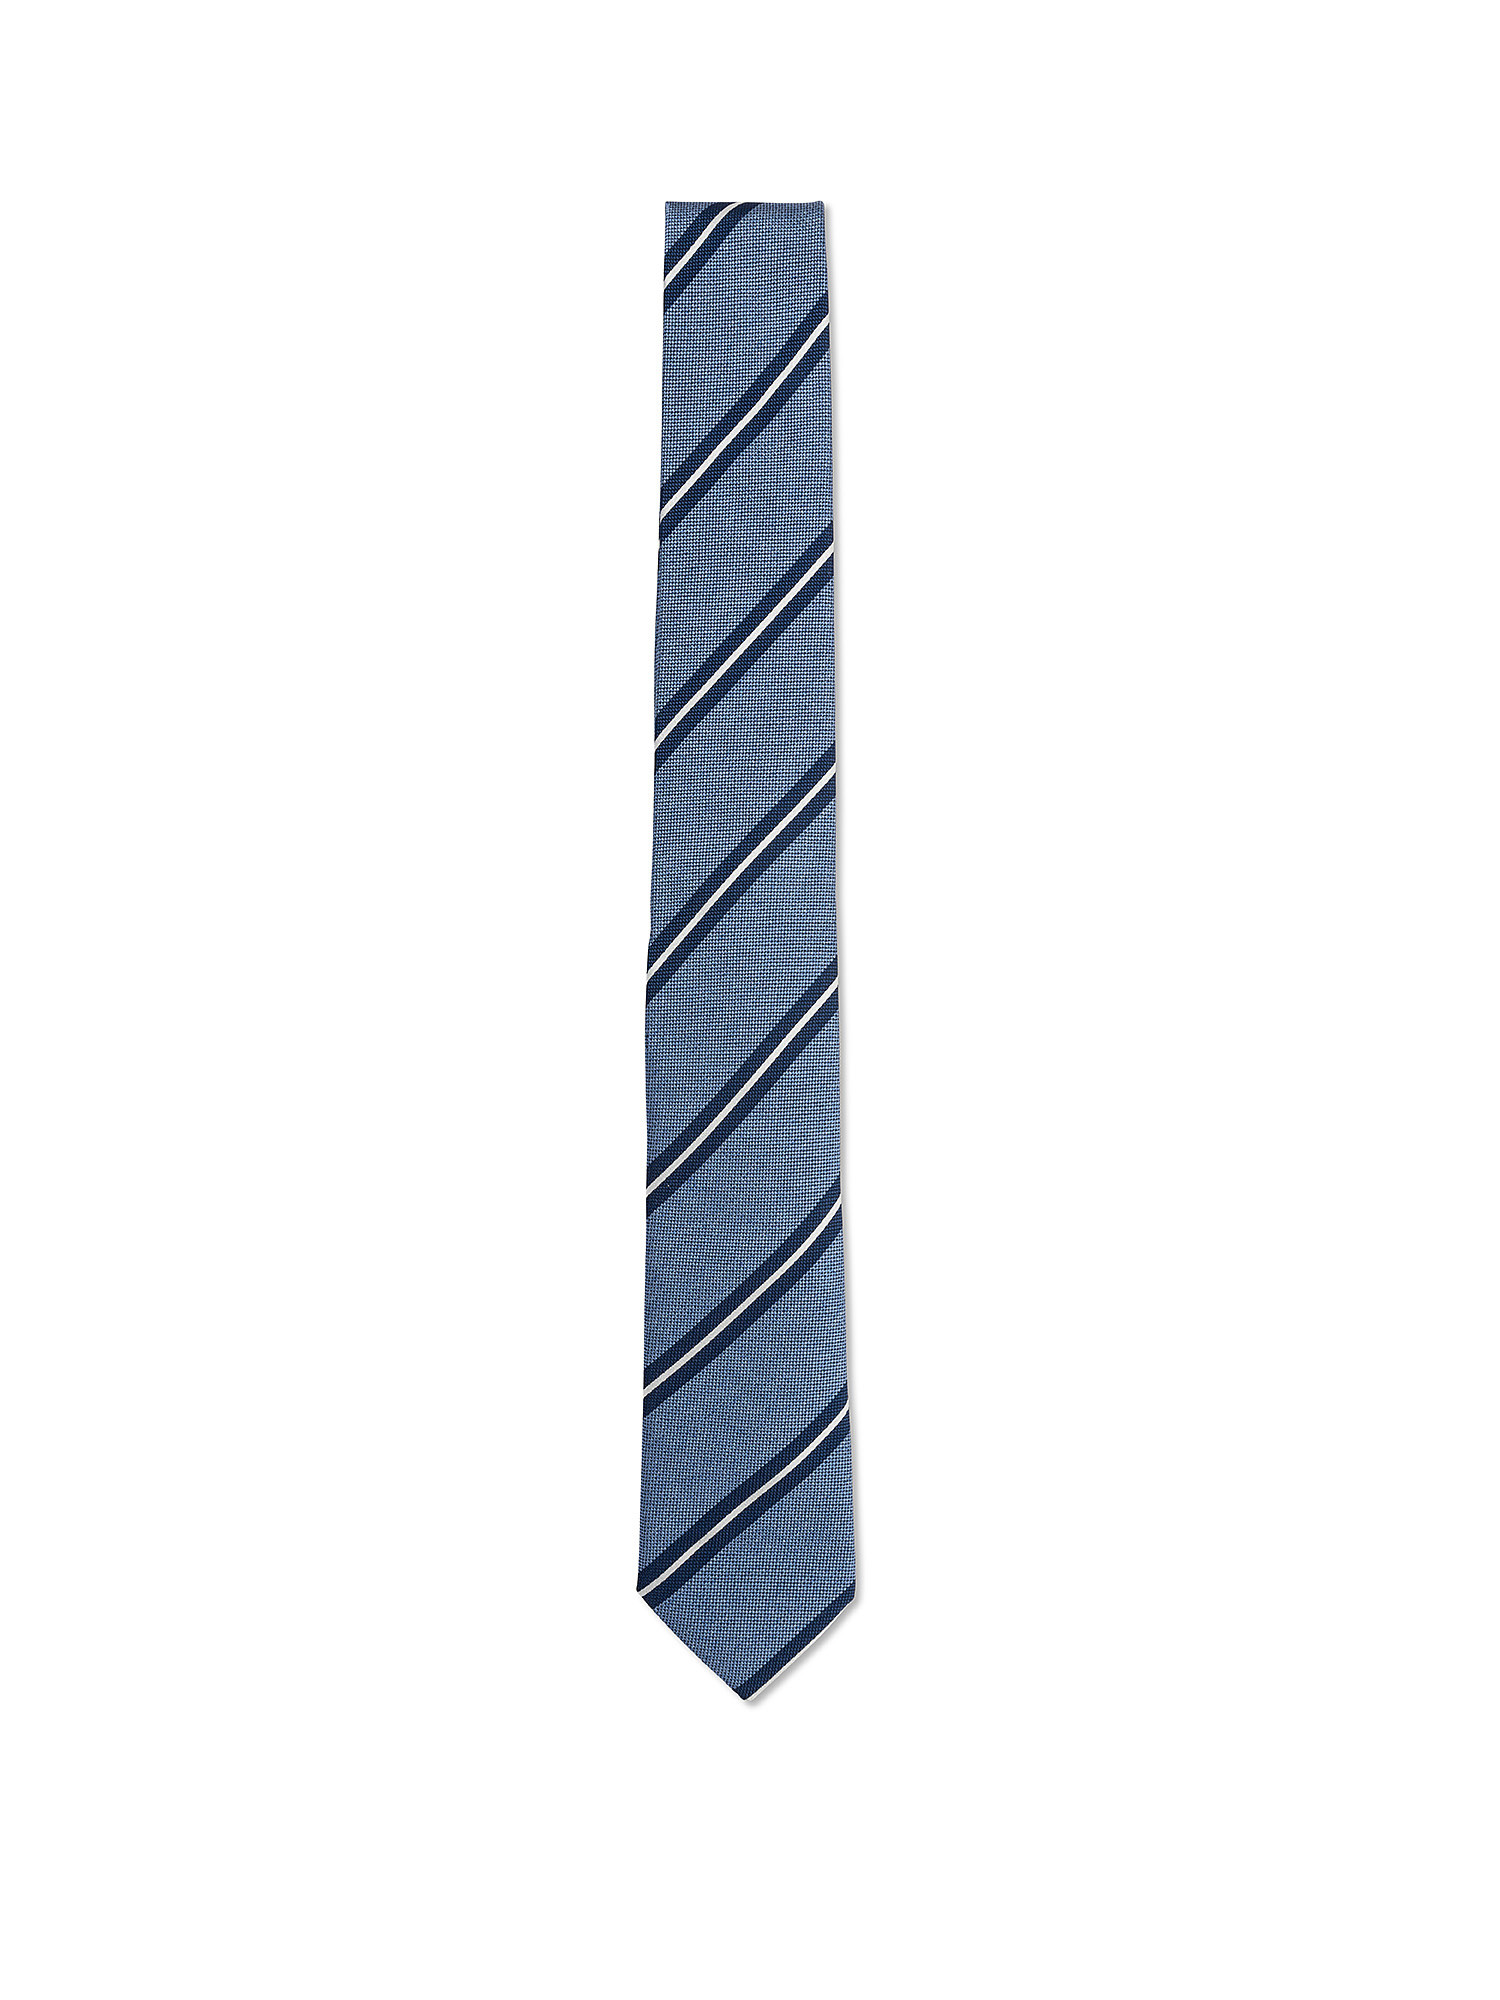 Cravatta in pura seta fantasia, Azzurro, large